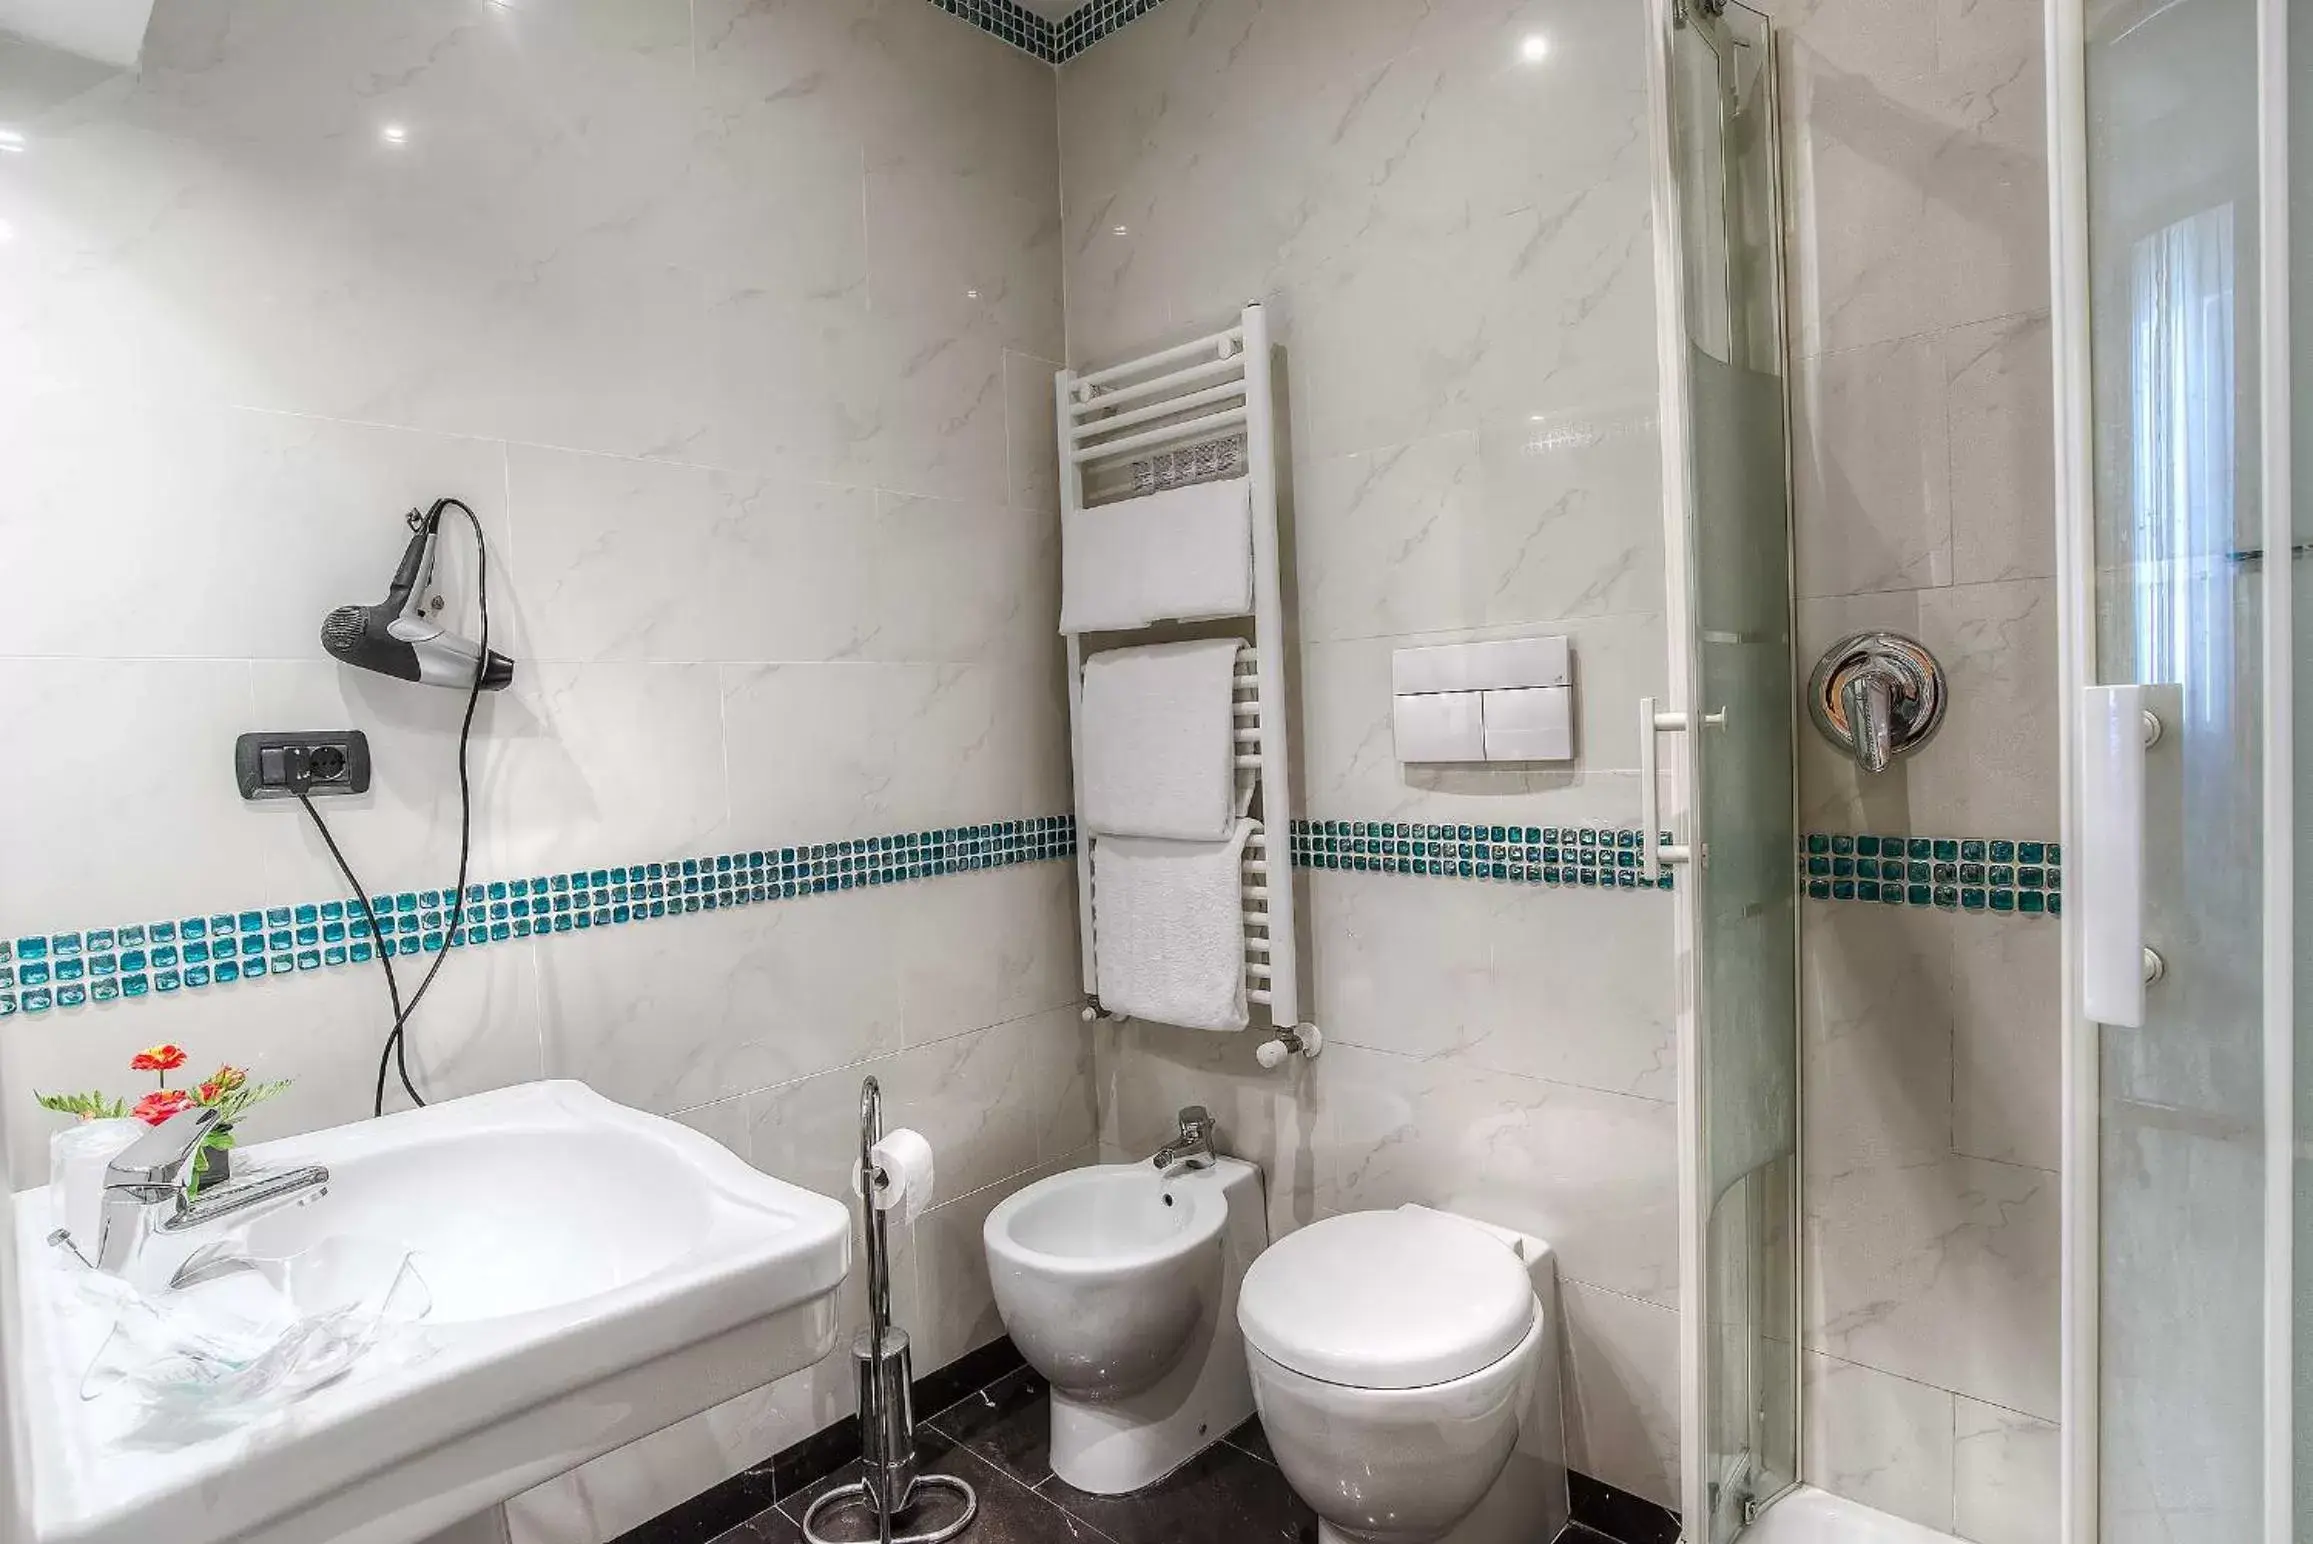 Bathroom in Hotel Caracciolo